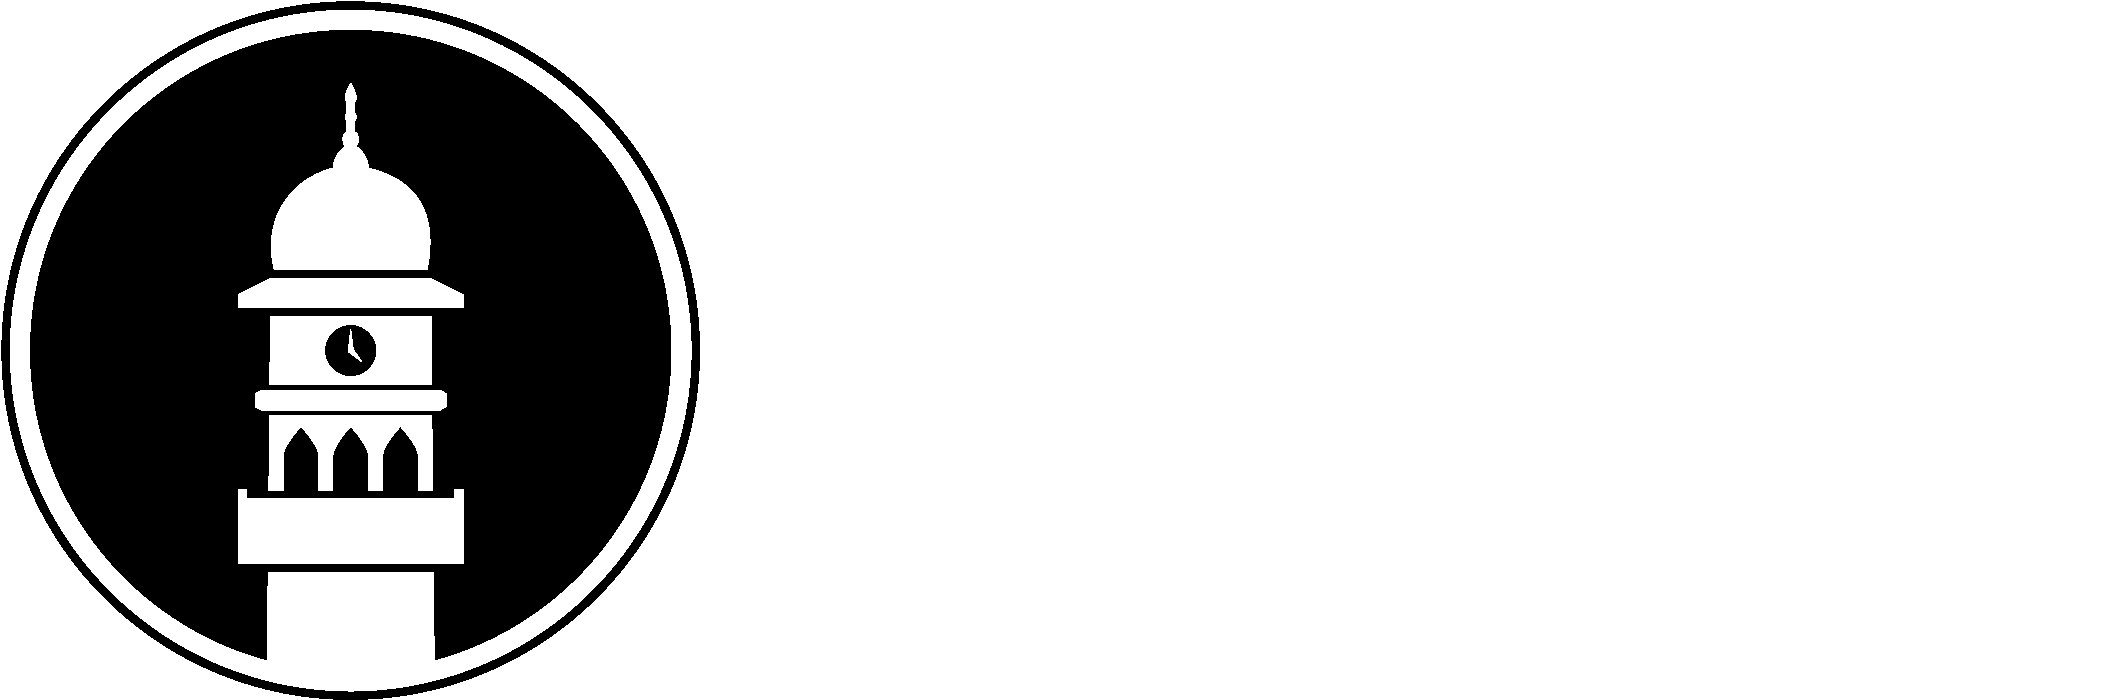 Ahmadiyya Muslim Community (2550x1004)